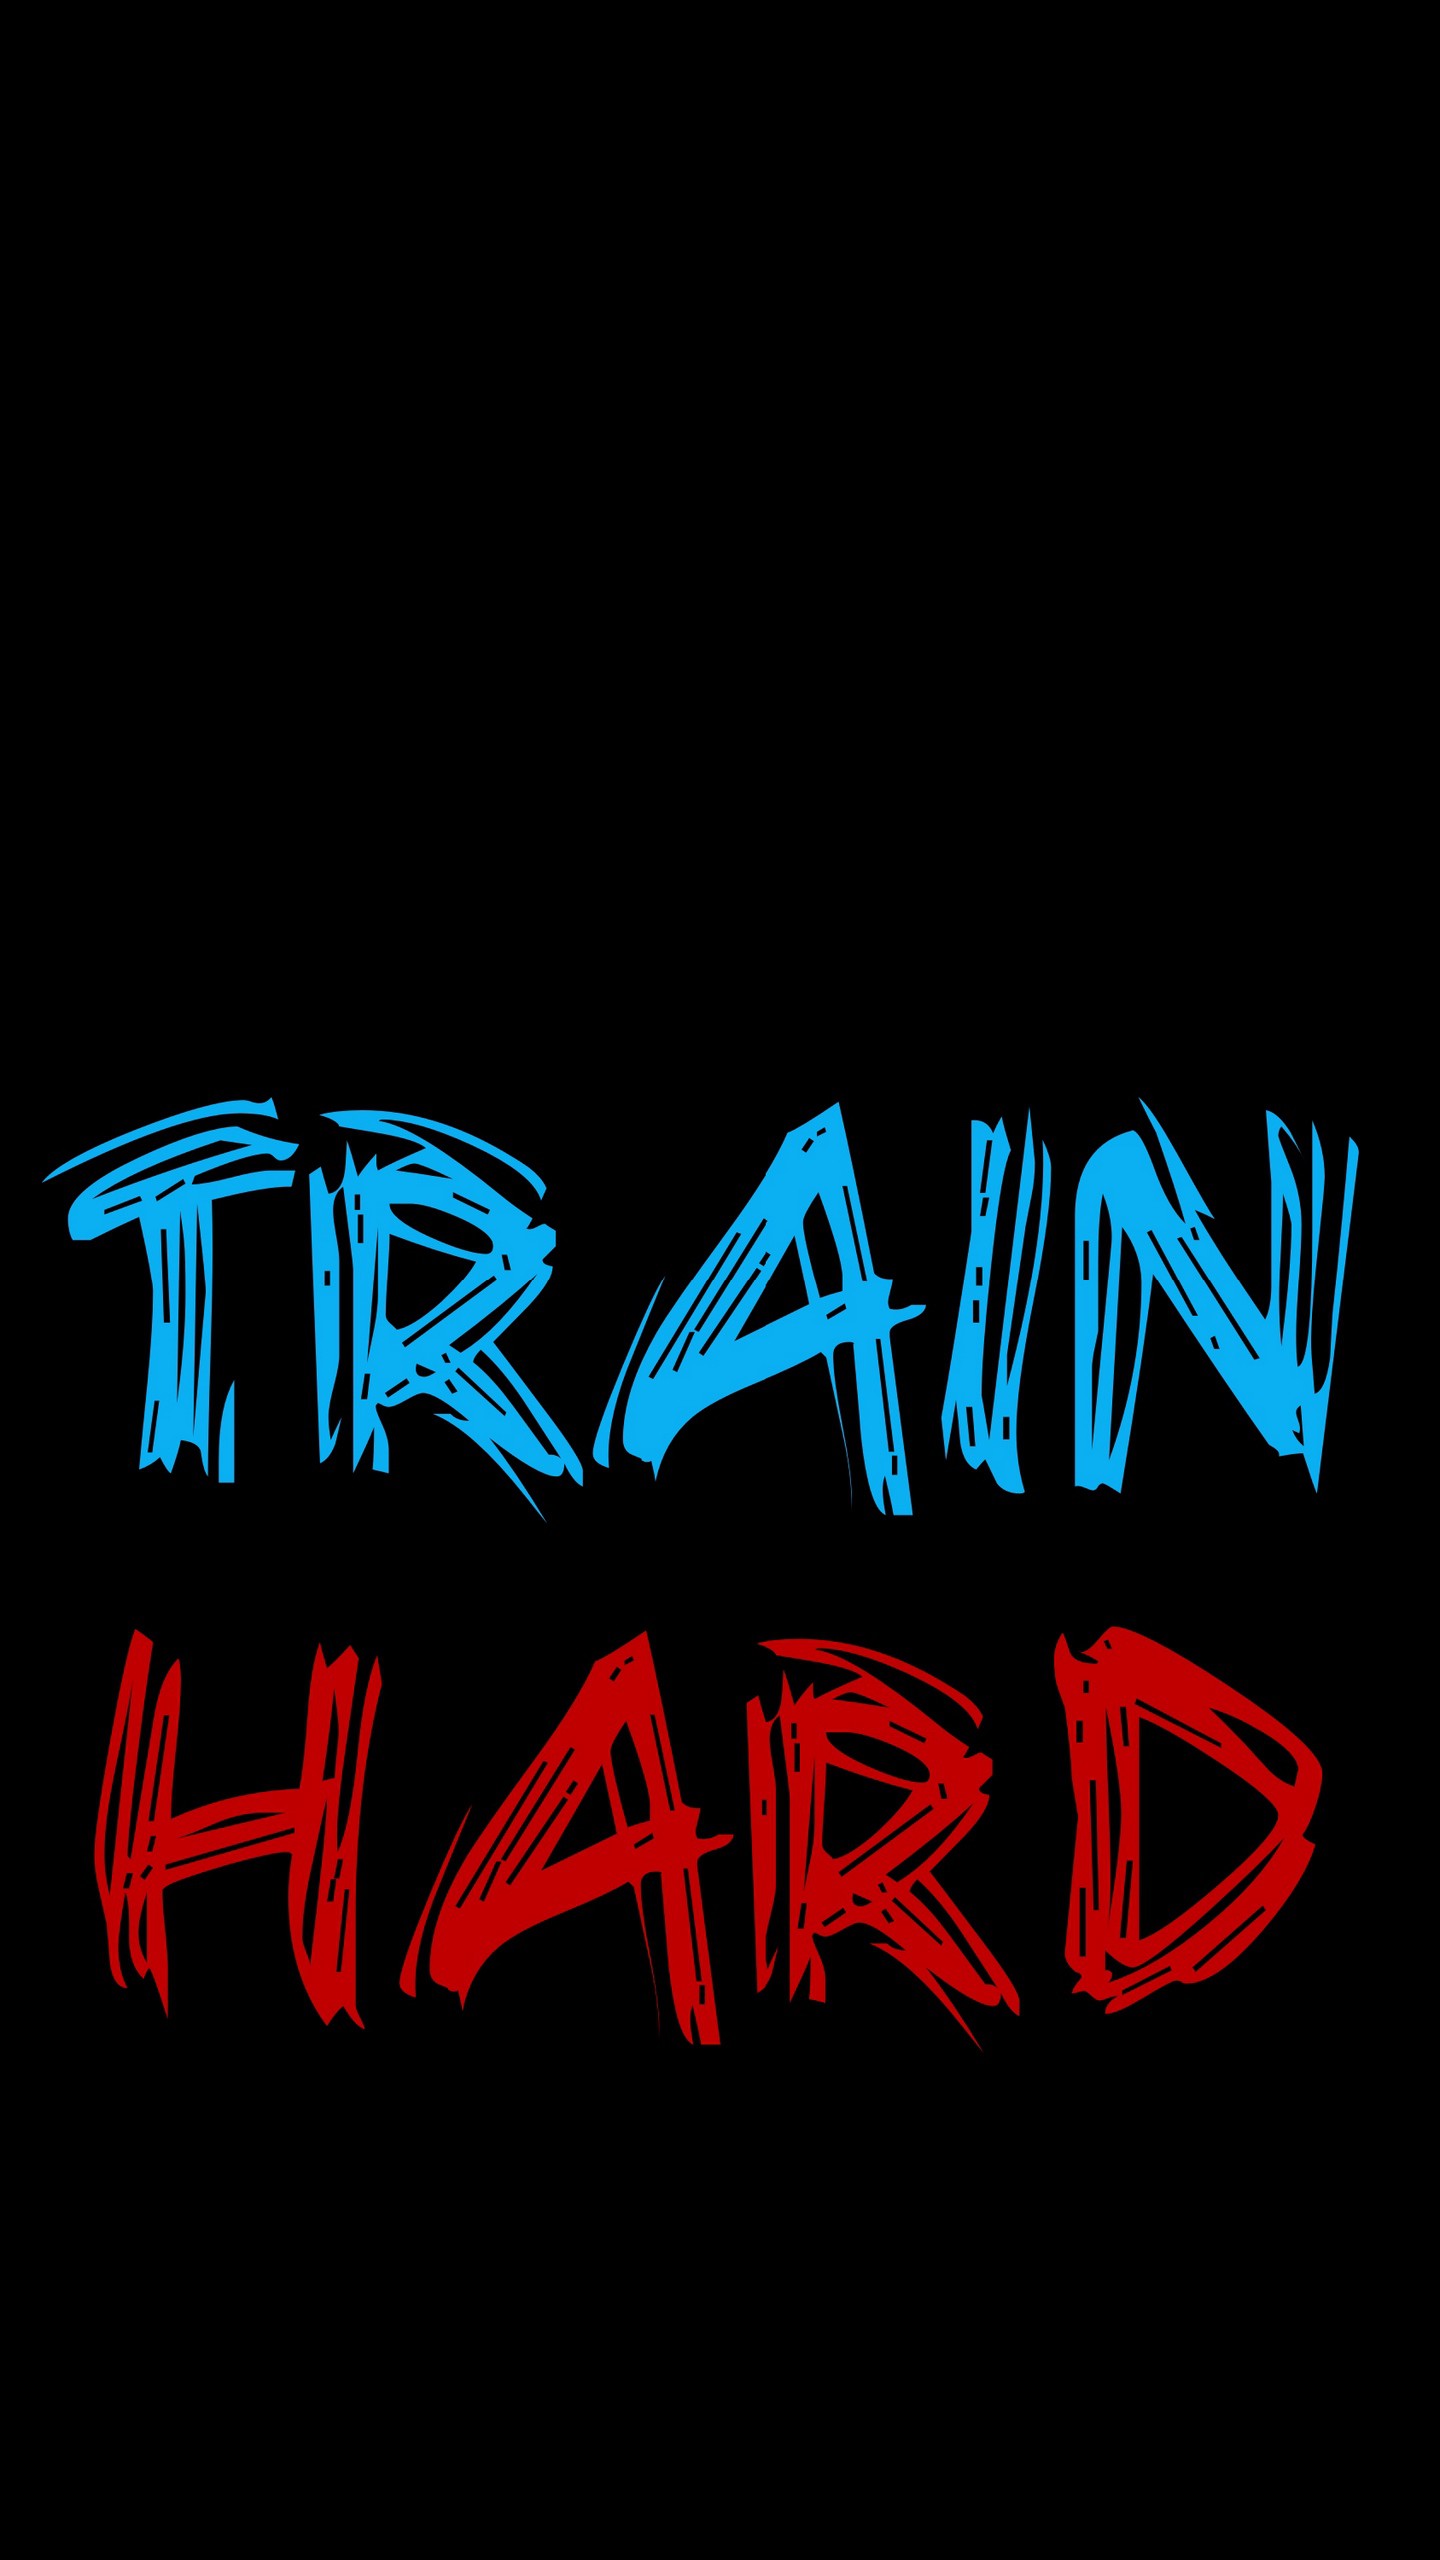 Обои на телефон надпись, тренировки, спорт, мотивация, train hard - скачать  бесплатно в высоком качестве из категории Слова